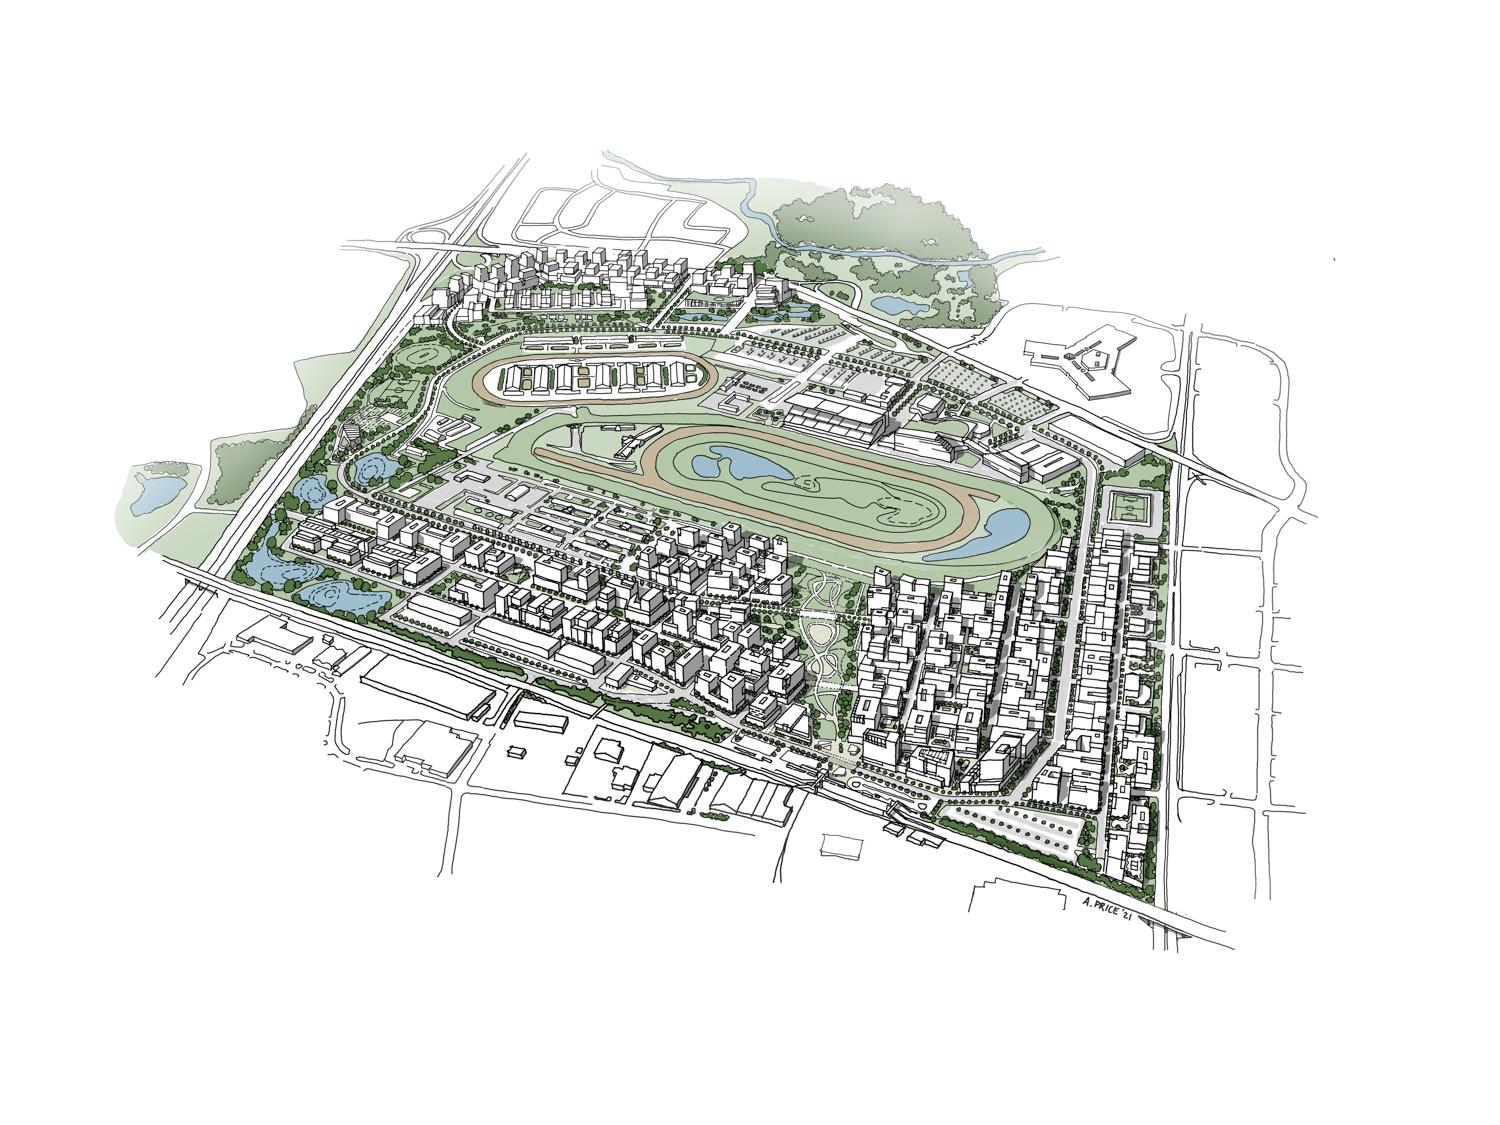 site plan aerial sketch of Woodbine master plan